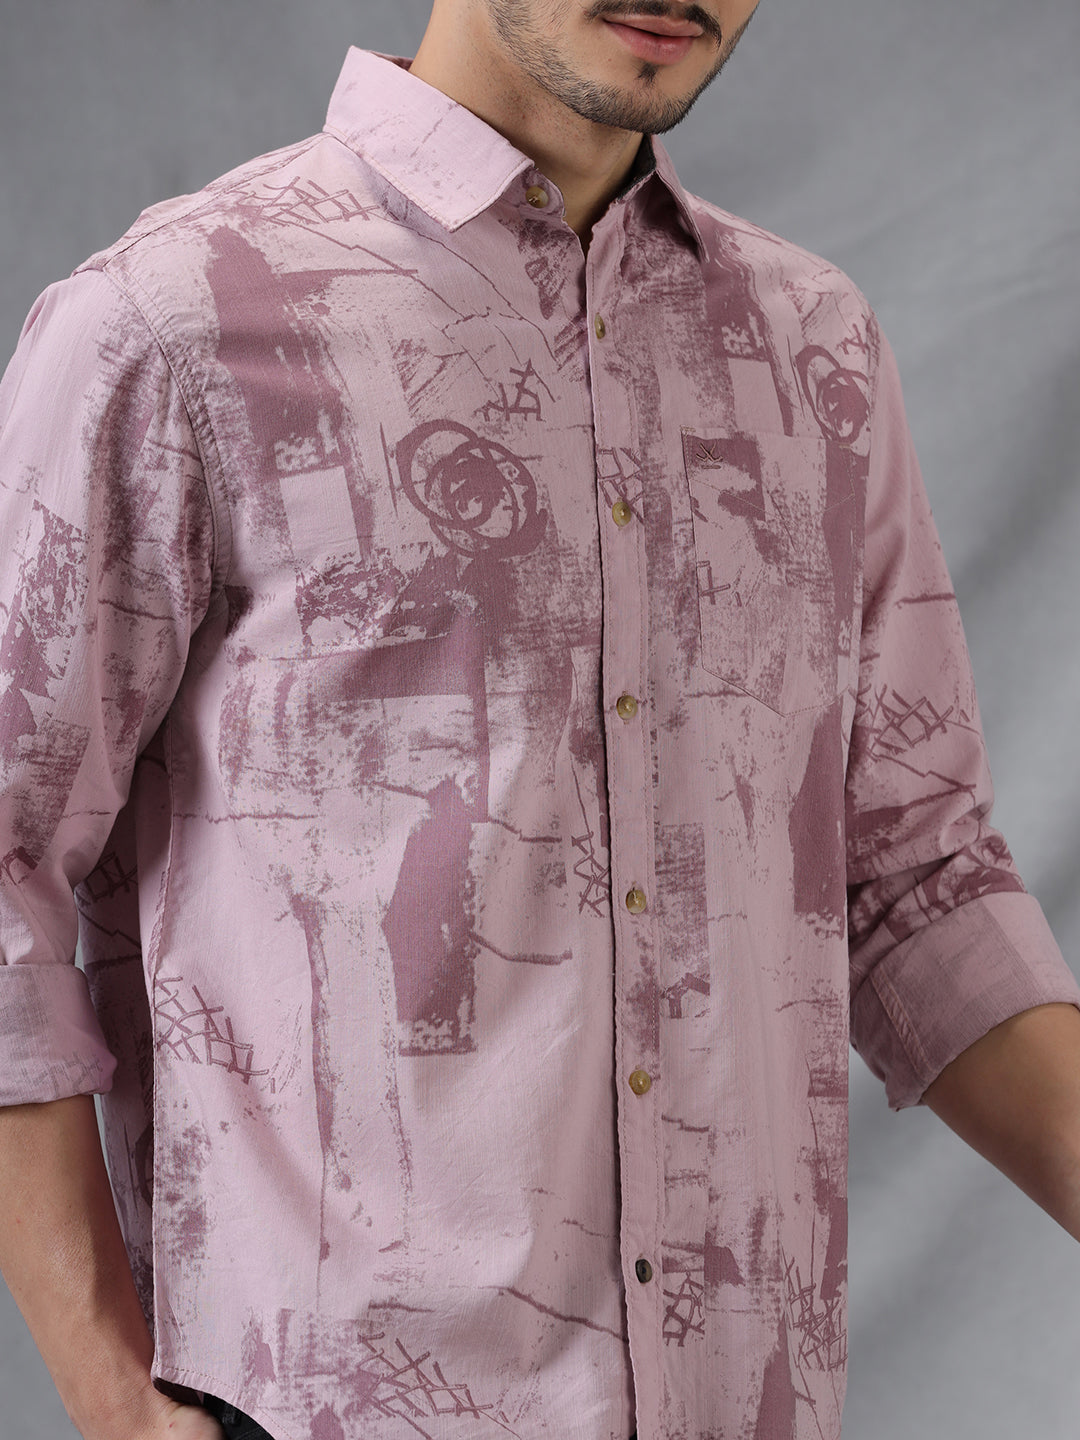 Printed Abstract Pink AOP Shirt